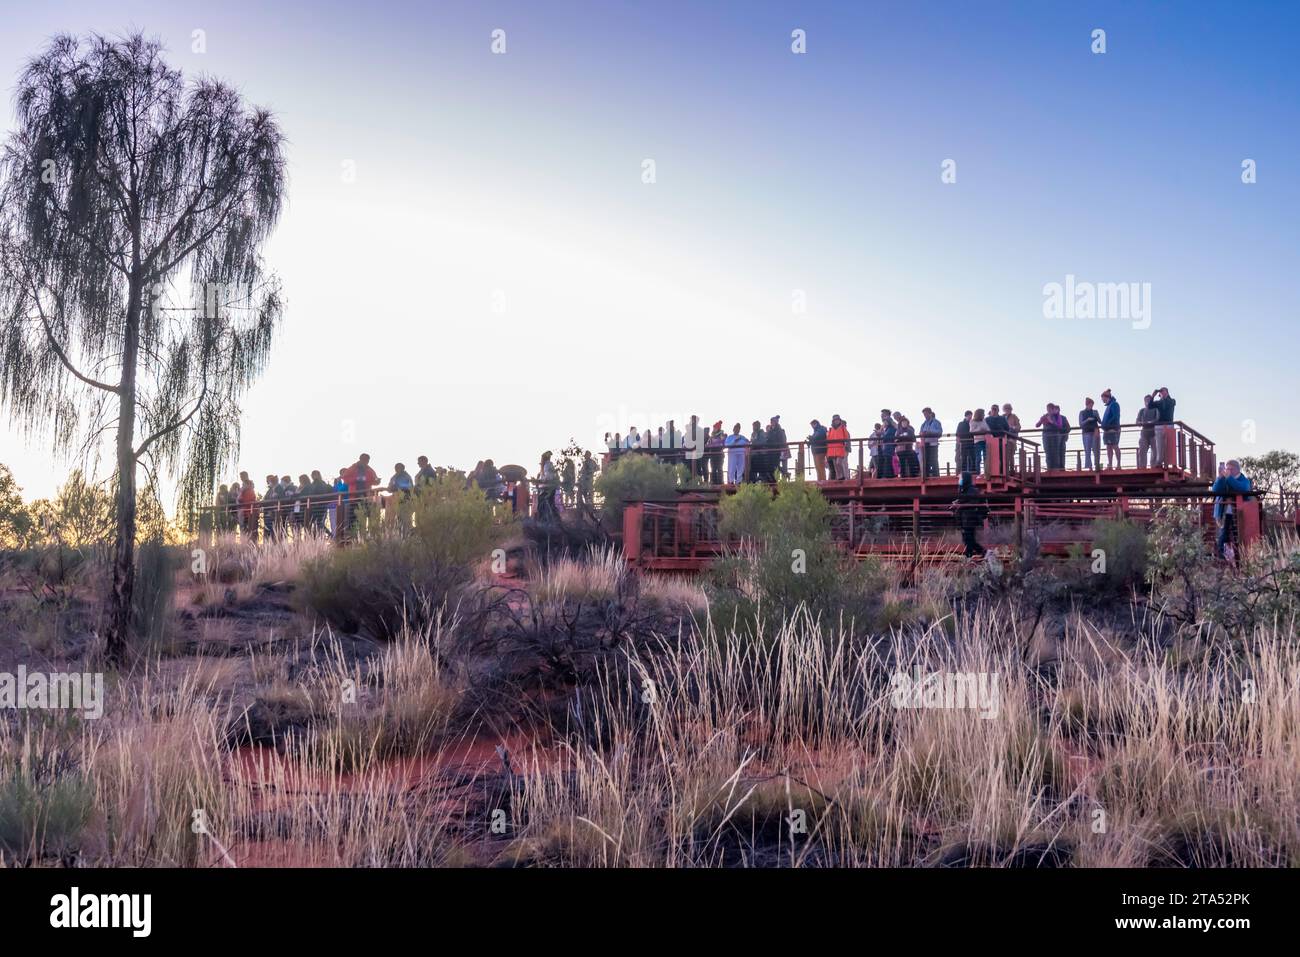 Die Menschen versammelten sich bei Sonnenaufgang im Kata Tjuta (die Olgas) im Uluru-Kata Tjuta National Park, Northern Territory, Australien Stockfoto